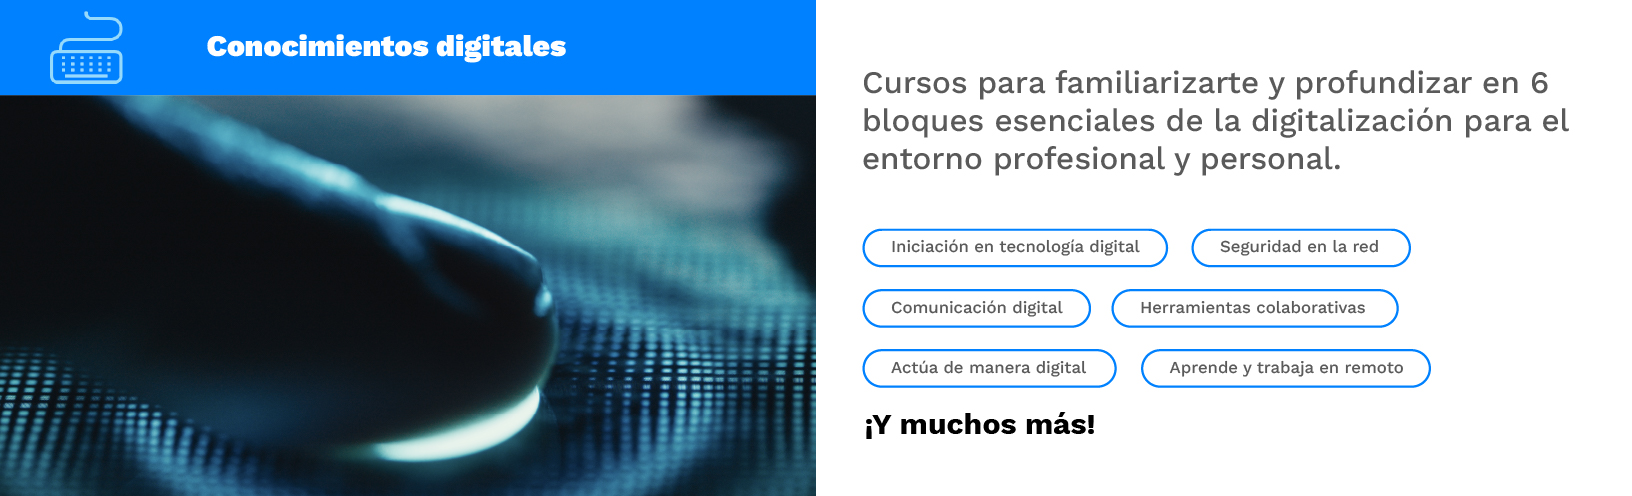 1_Cursos_Conocimientos digitales